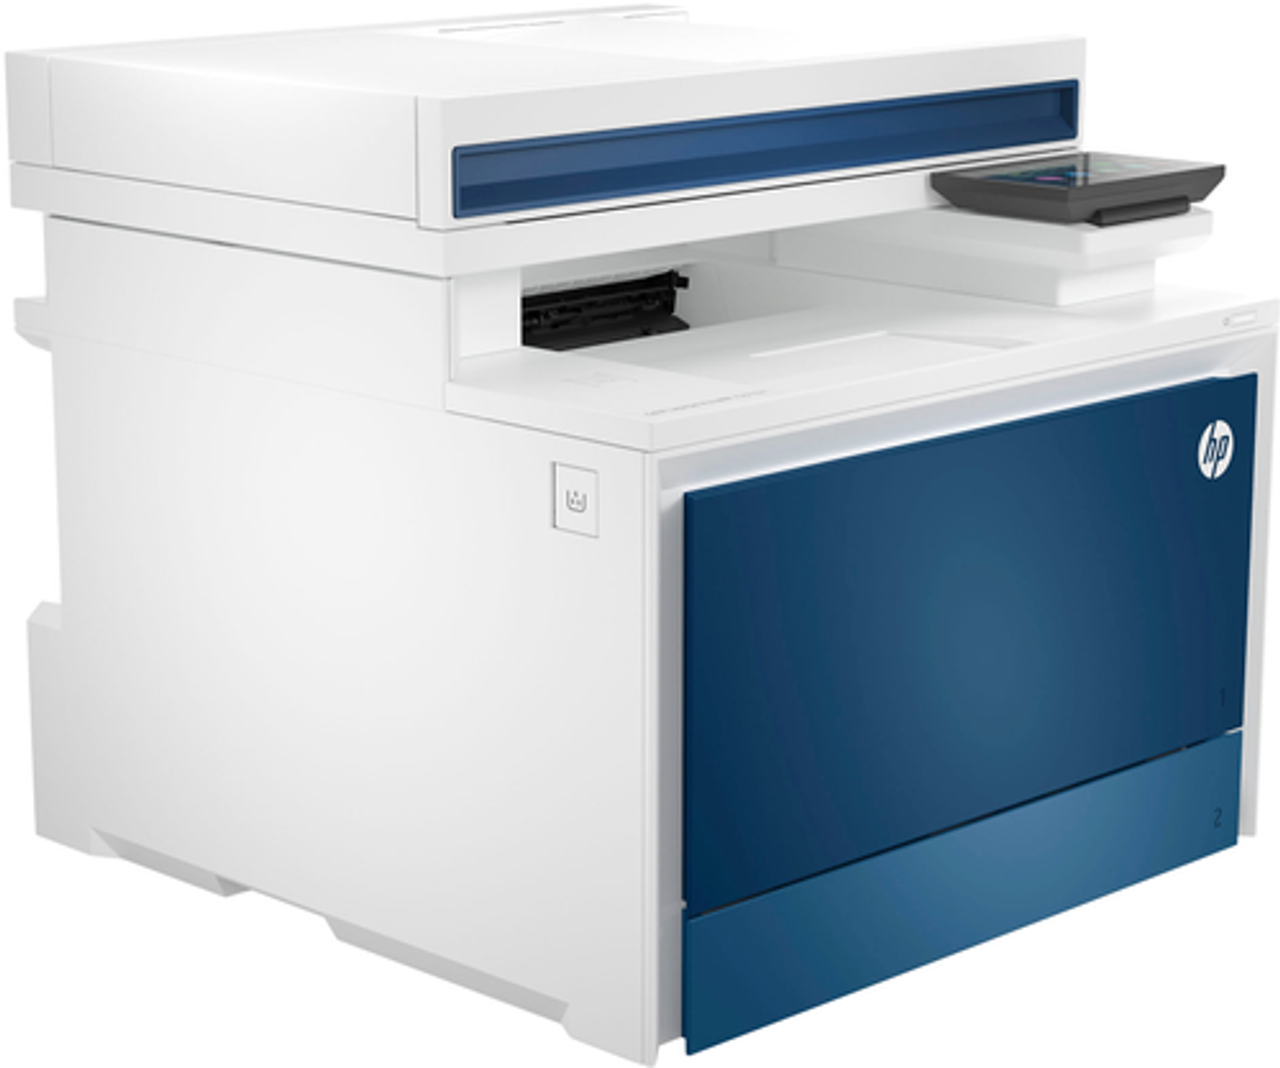 HP - LaserJet Pro 4301fdn Wireless Color All-in-One Laser Printer - White/Blue